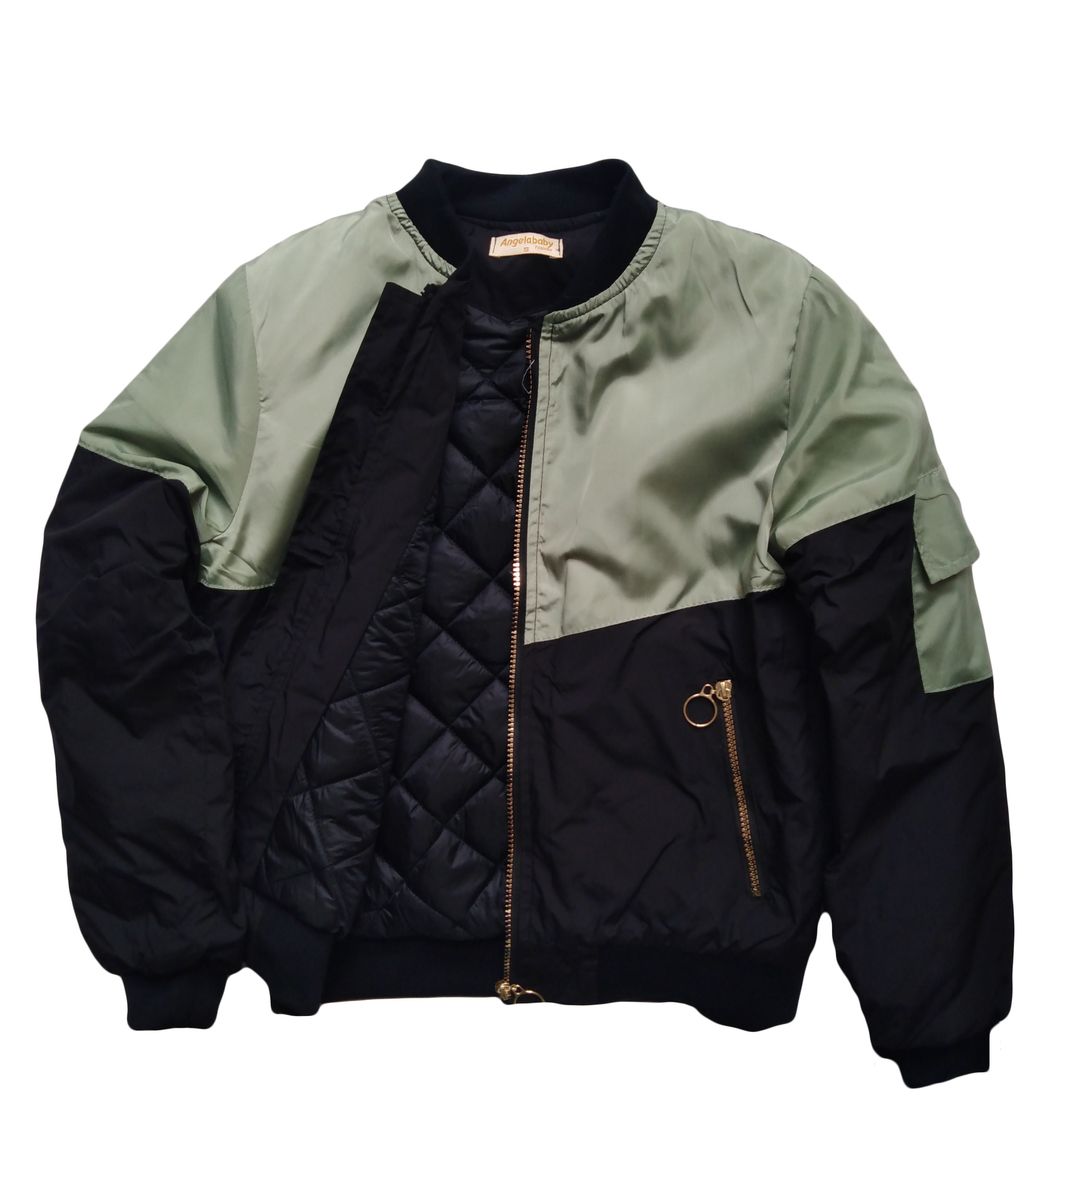 Men's Bomber Jacket Angelaby Winter Jacket and Coat | Buy Online in ...